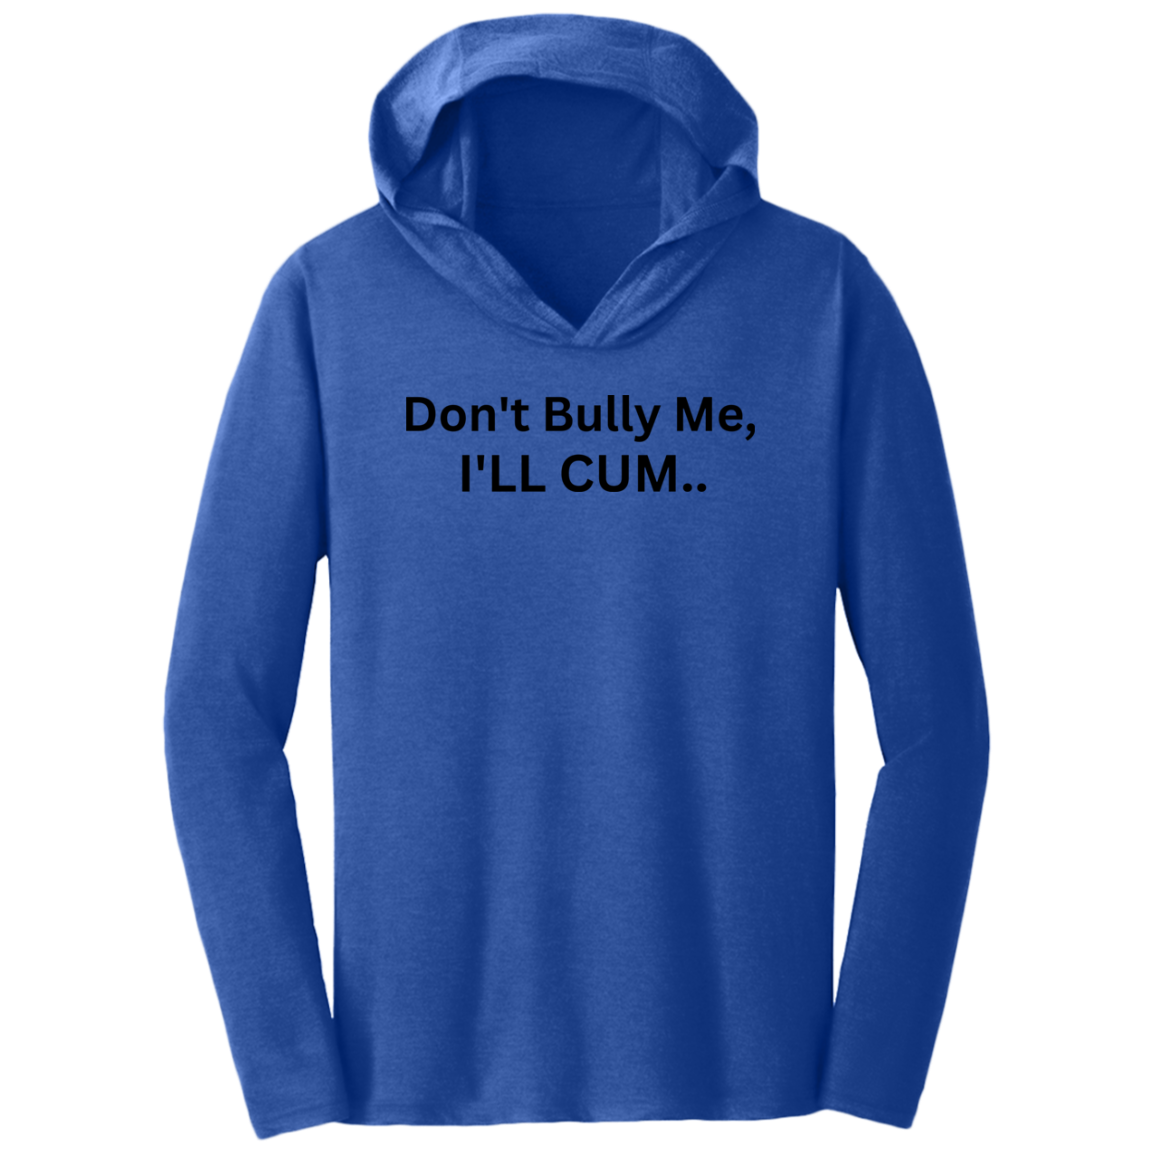 T-shirt Don't Bully Me 08i24i23 DM139 Triblend T-Shirt Hoodie